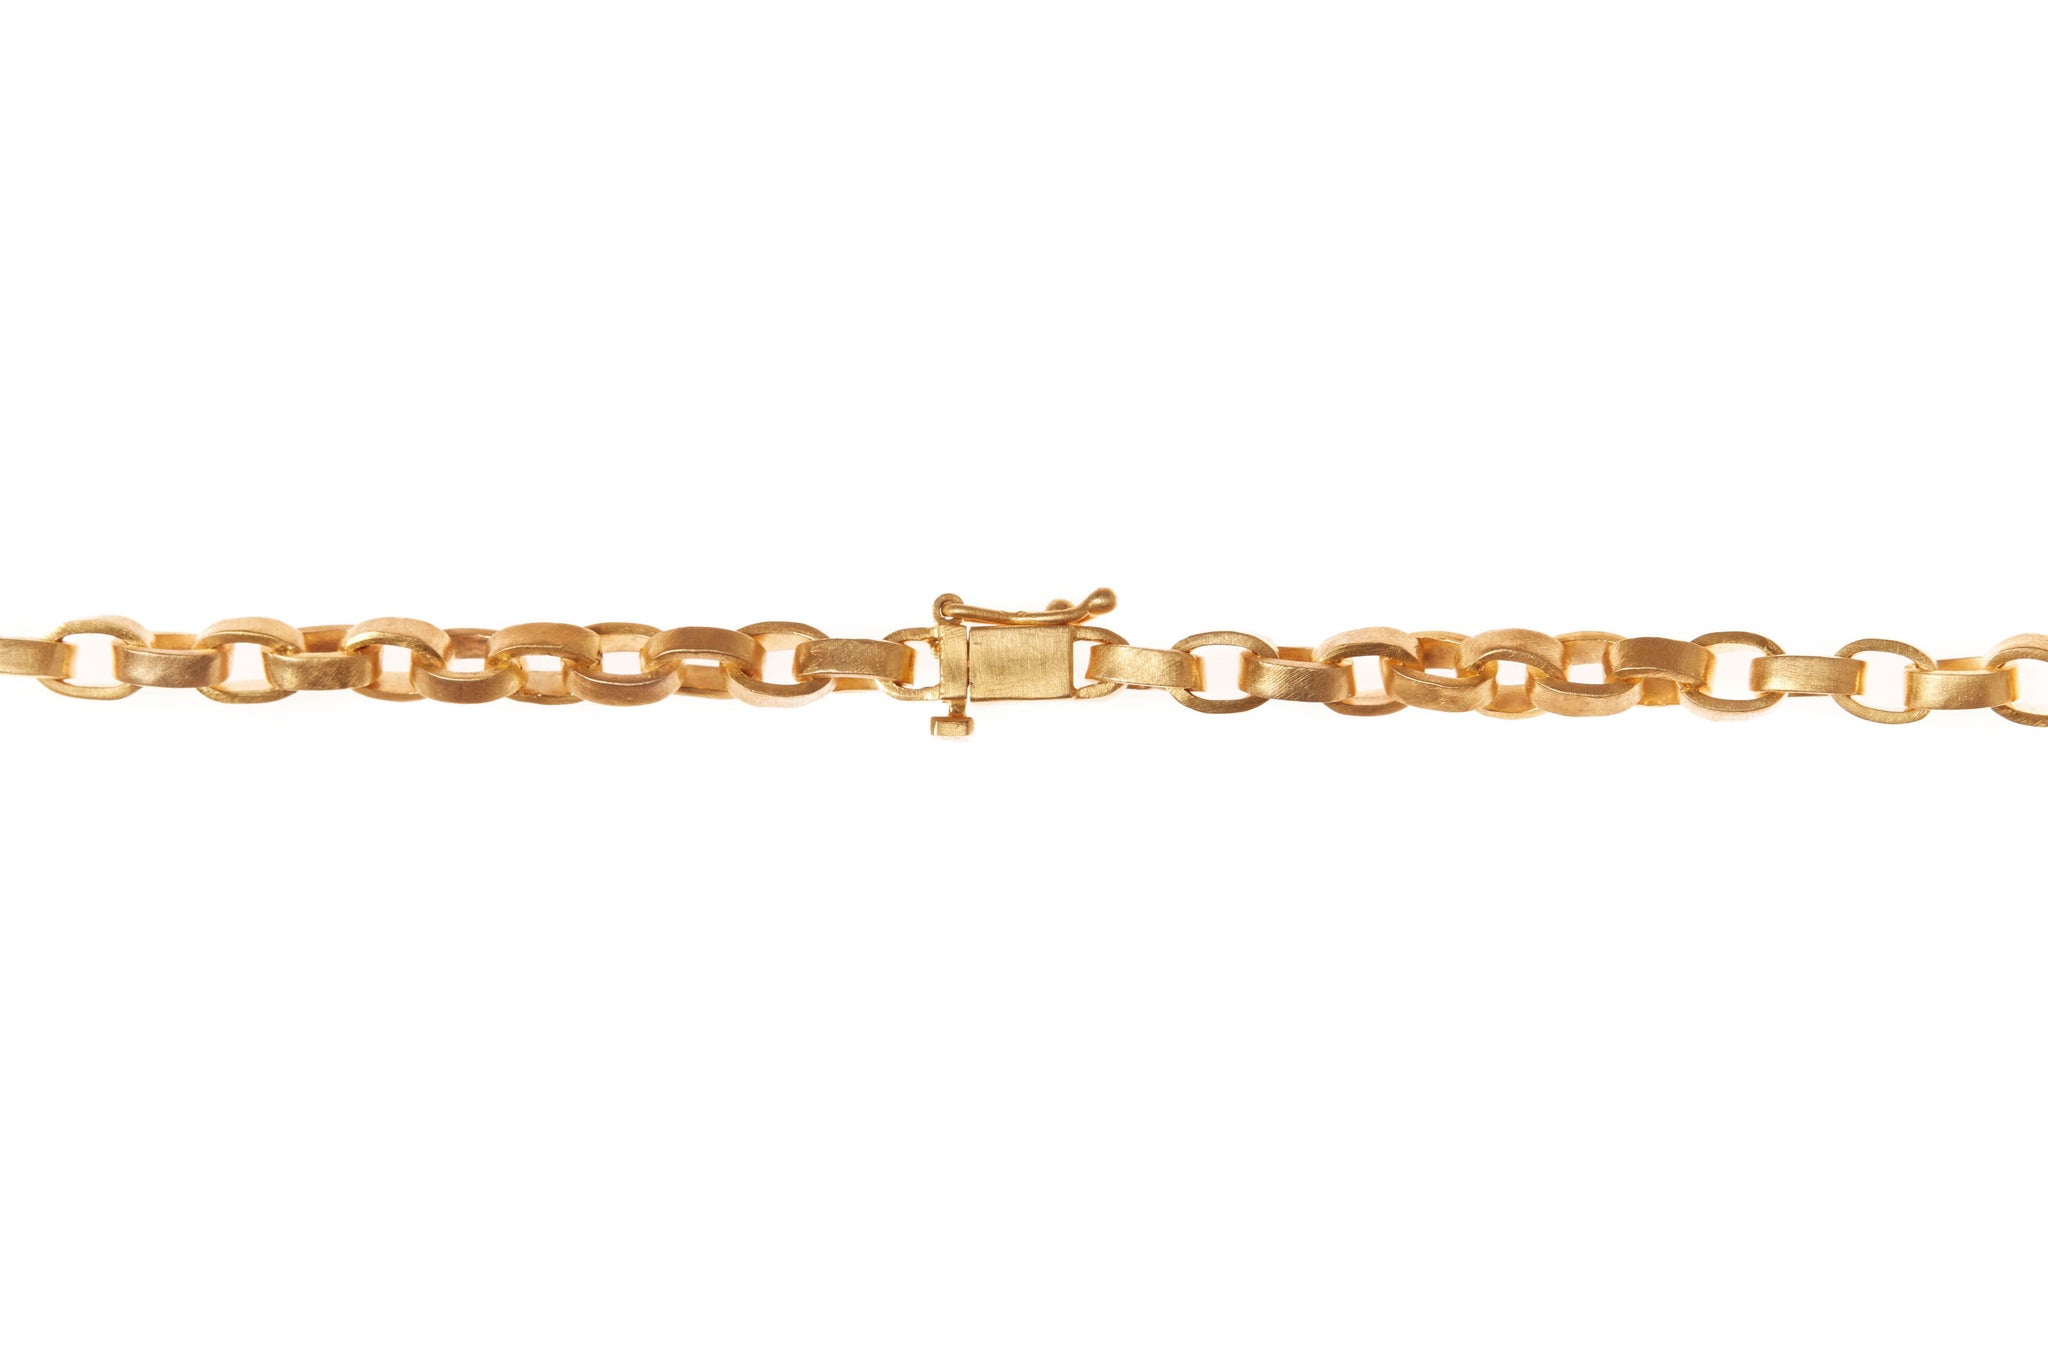 darius jewels hand made fine jewelry 18k yellow gold signature link chain darius khonsary